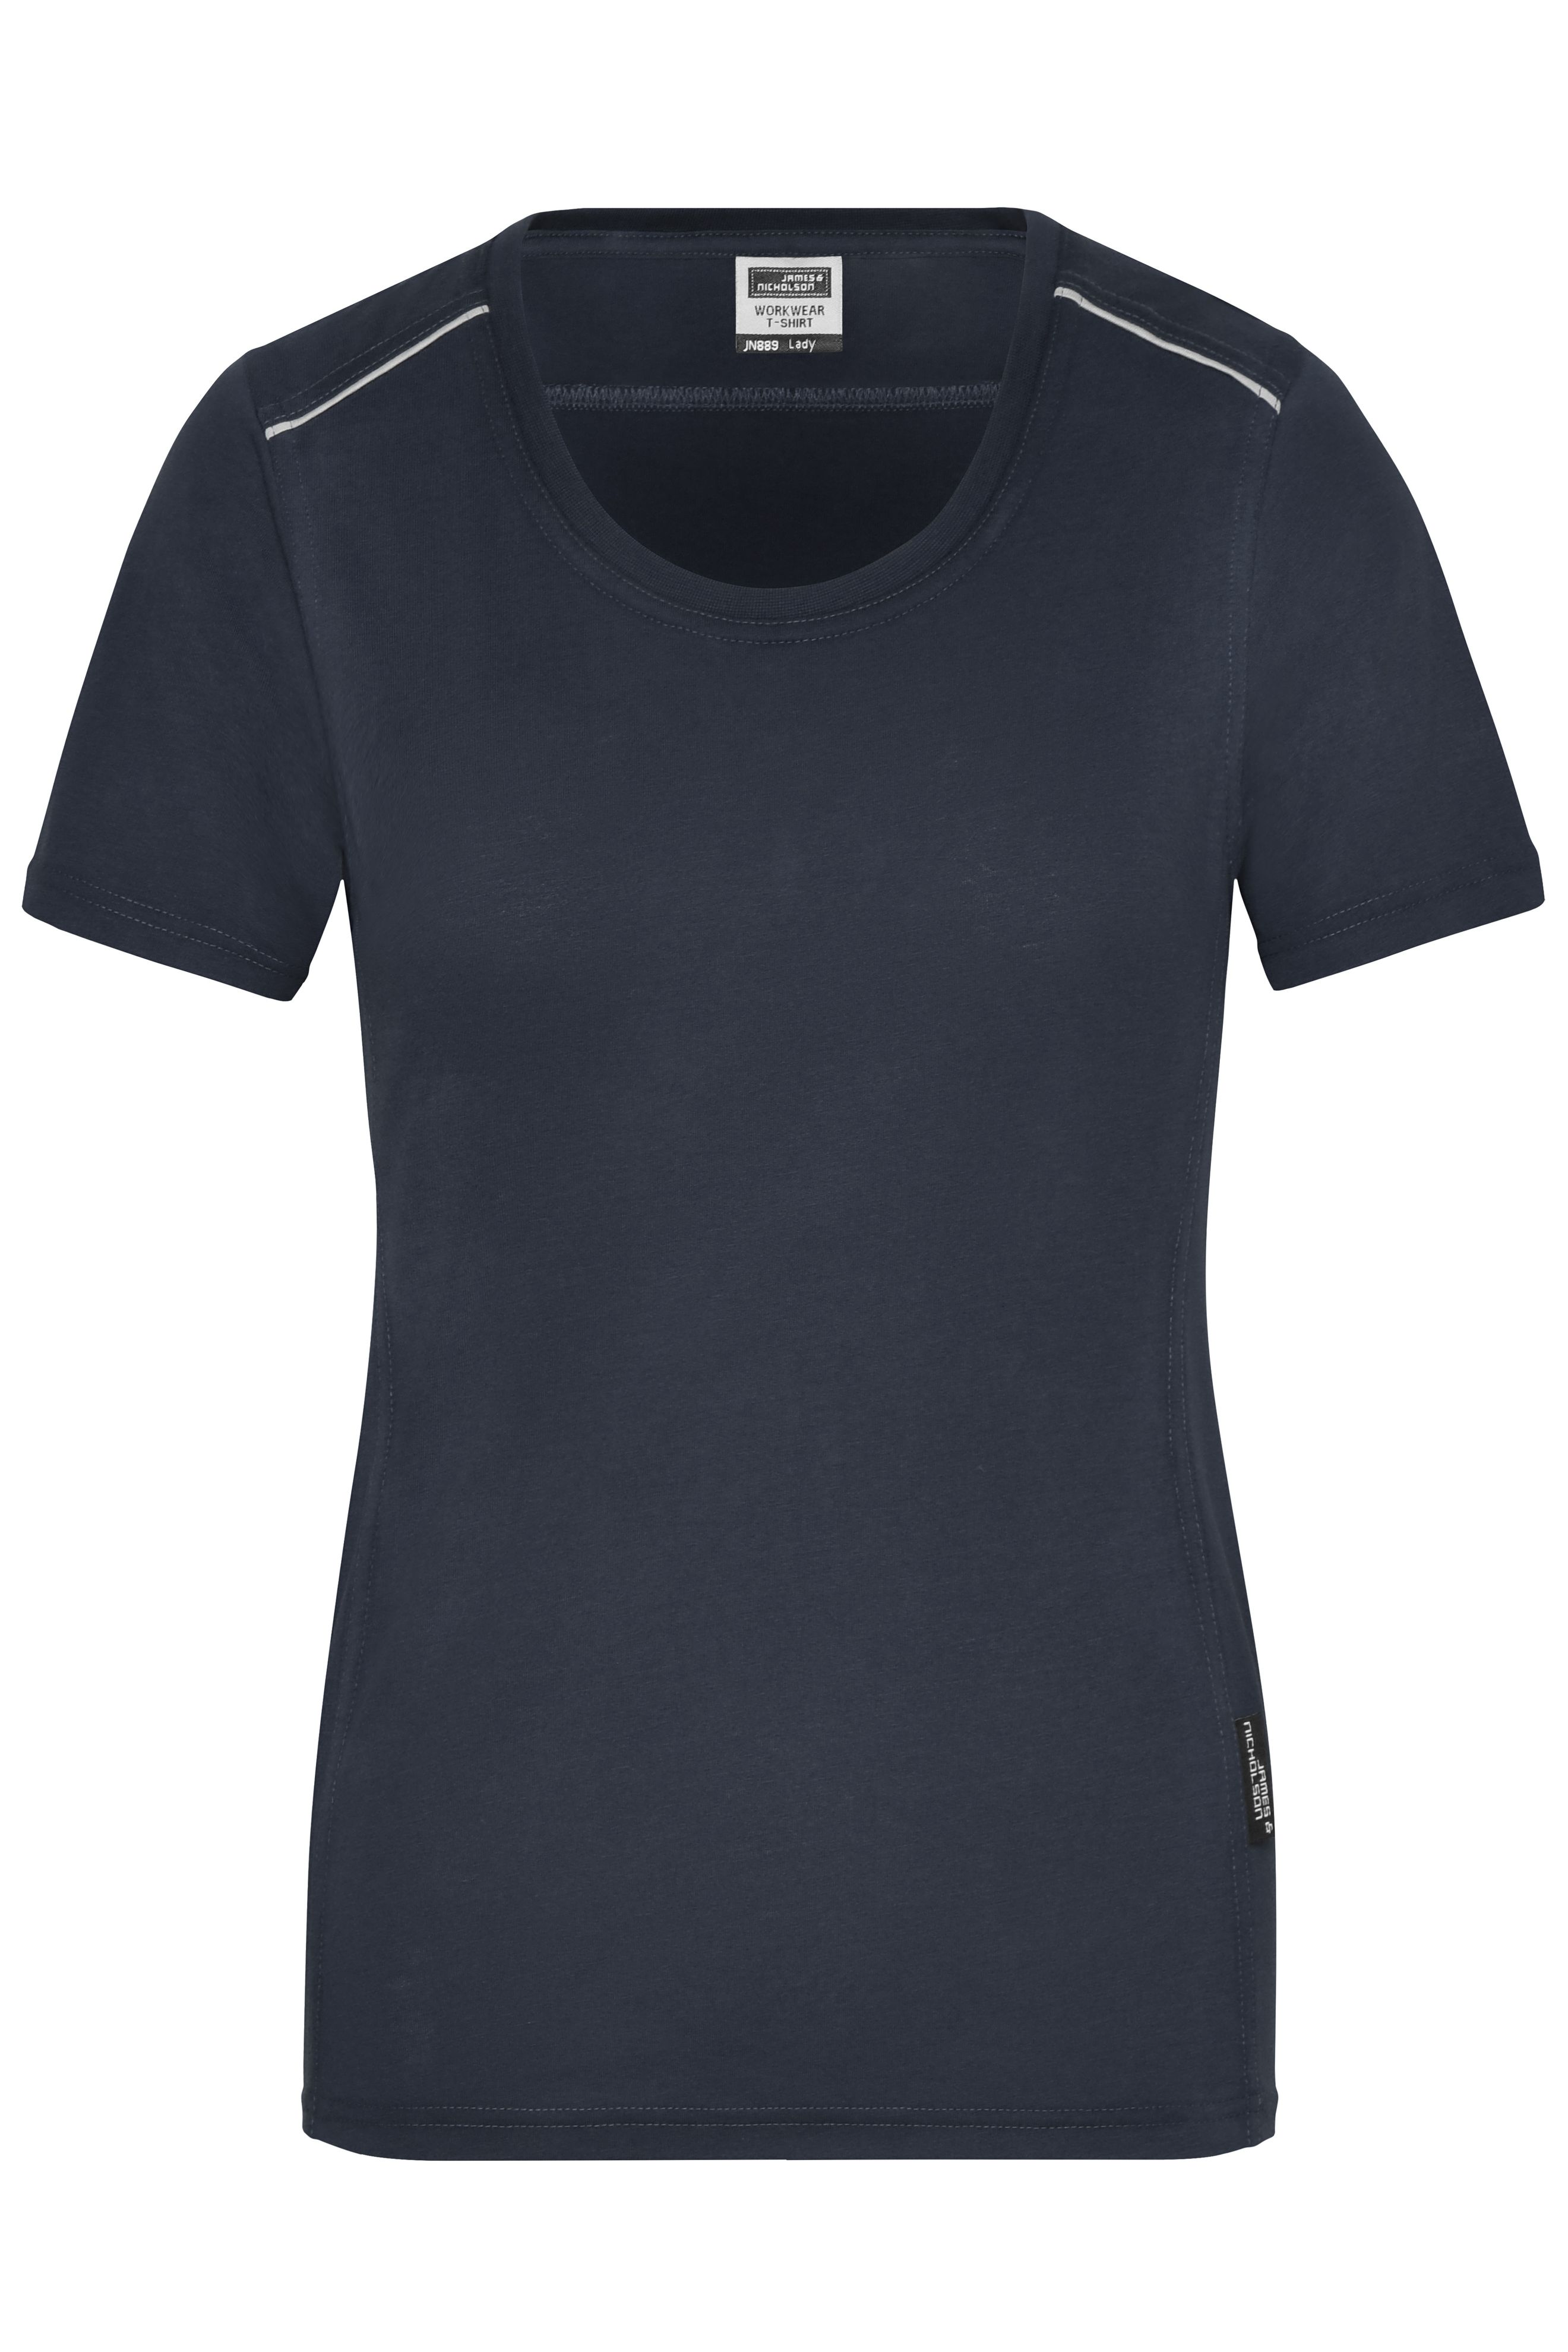 Ladies Ladies' Workwear T-Shirt - SOLID - Navy-Workweartextilien